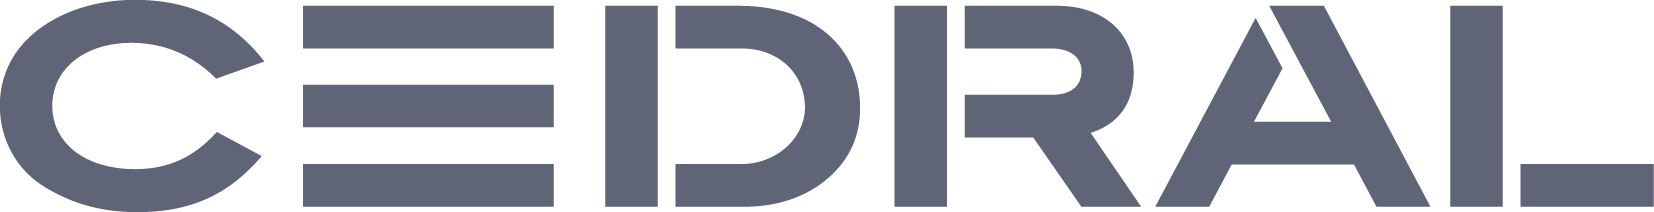 22Cedral logo seul_2019_Q_1.png